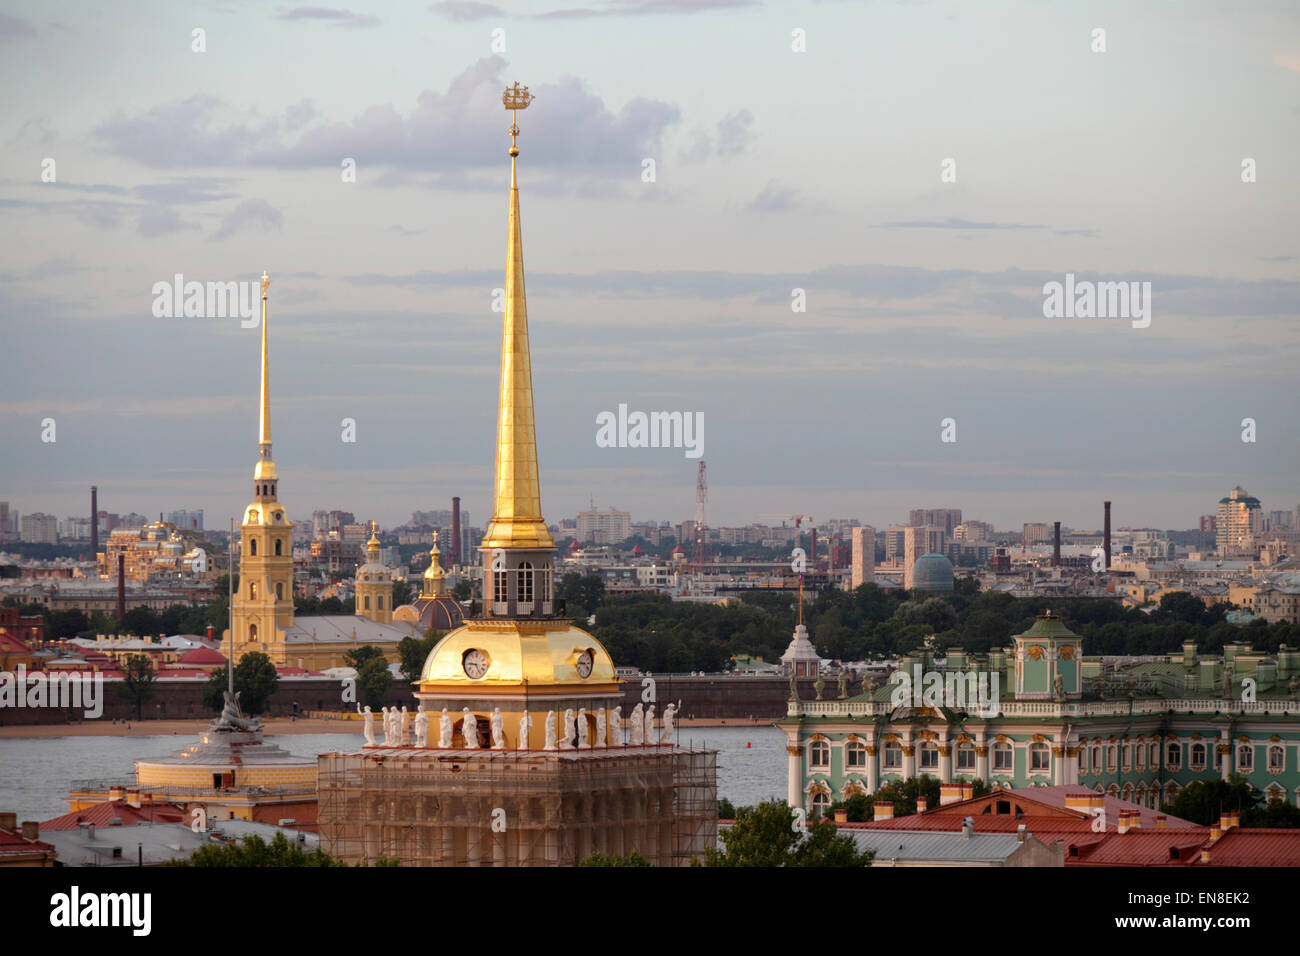 Die Admiralität vergoldete Turmspitze, gekrönt von einem kleinen Segel-Kriegsschiff und Peter und Paul Cathedral, Sankt Petersburg, Russland Stockfoto